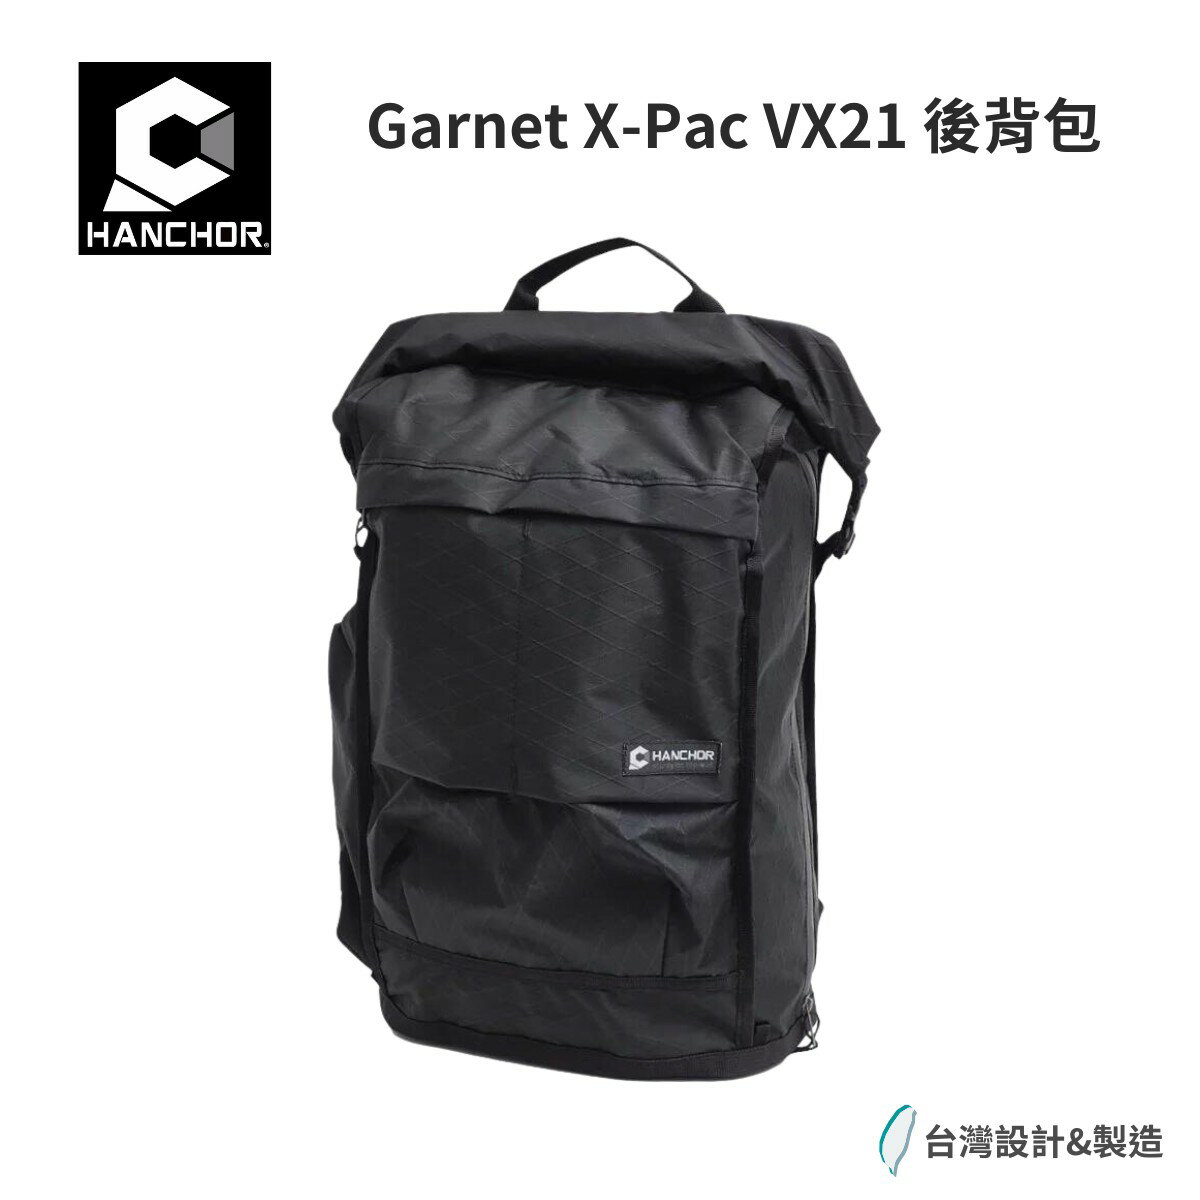 【Hanchor】Garnet X-Pac VX21後背包